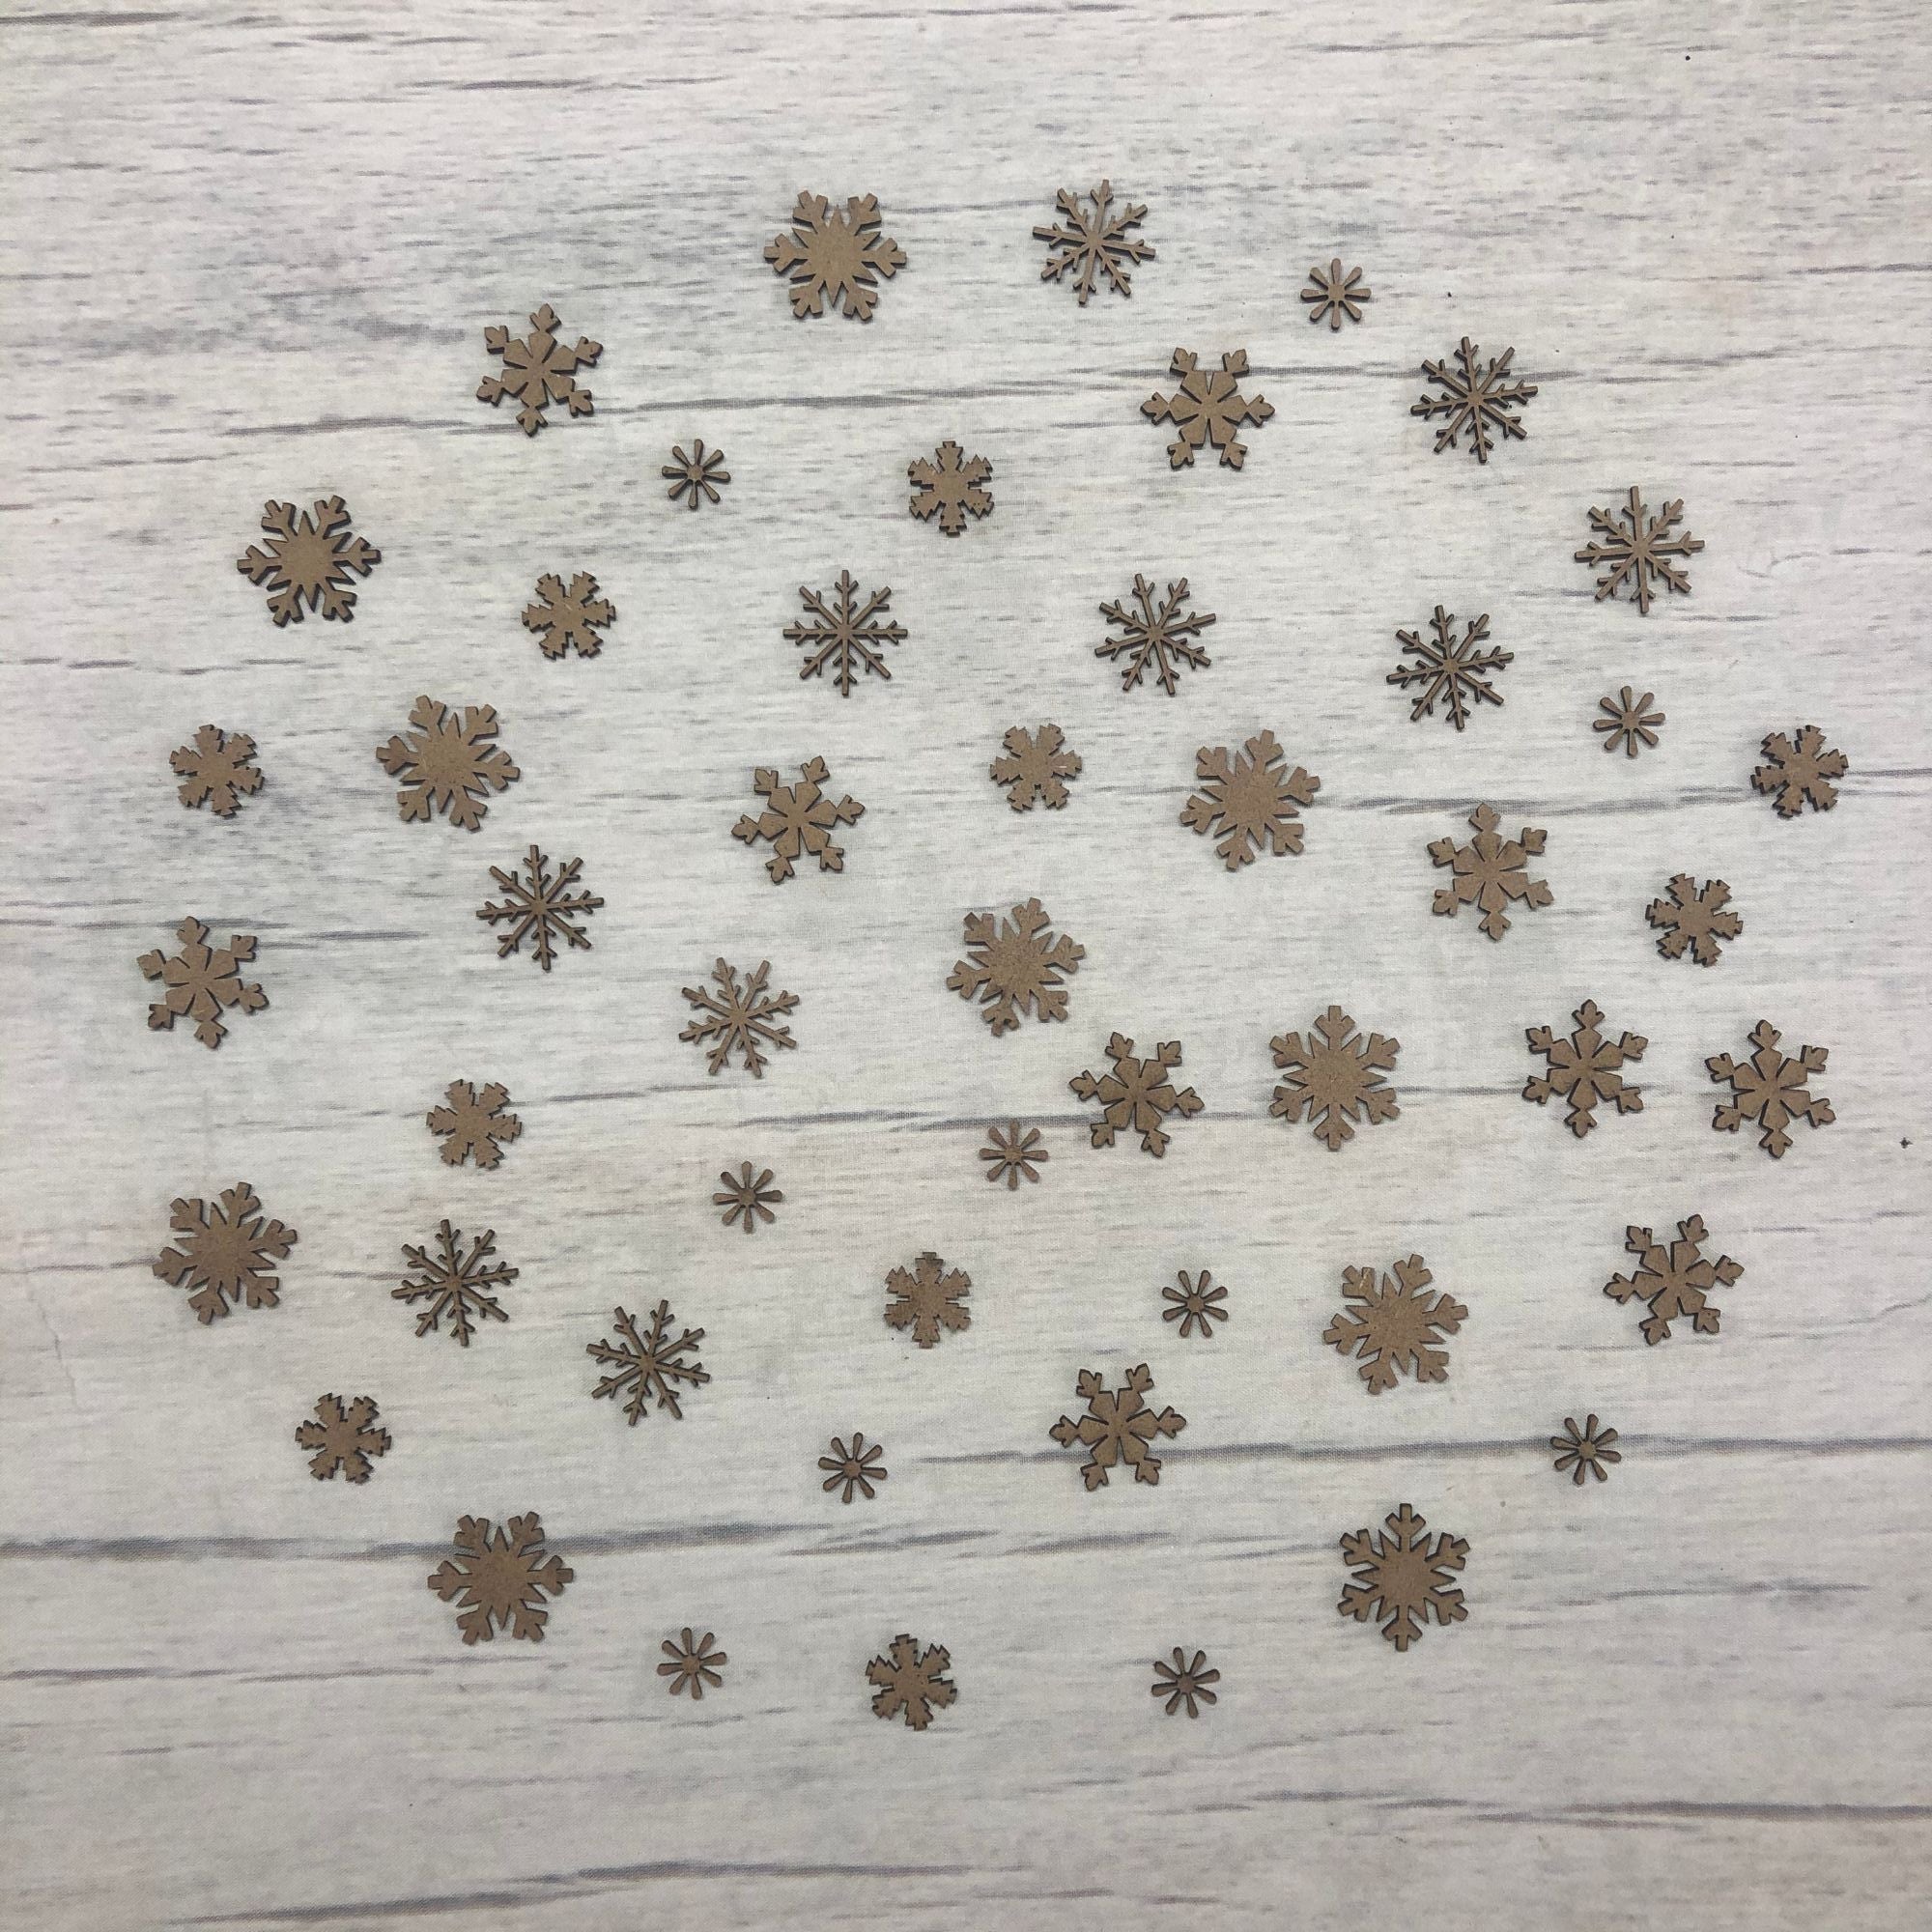 Snowflakes - 50 piece mini set